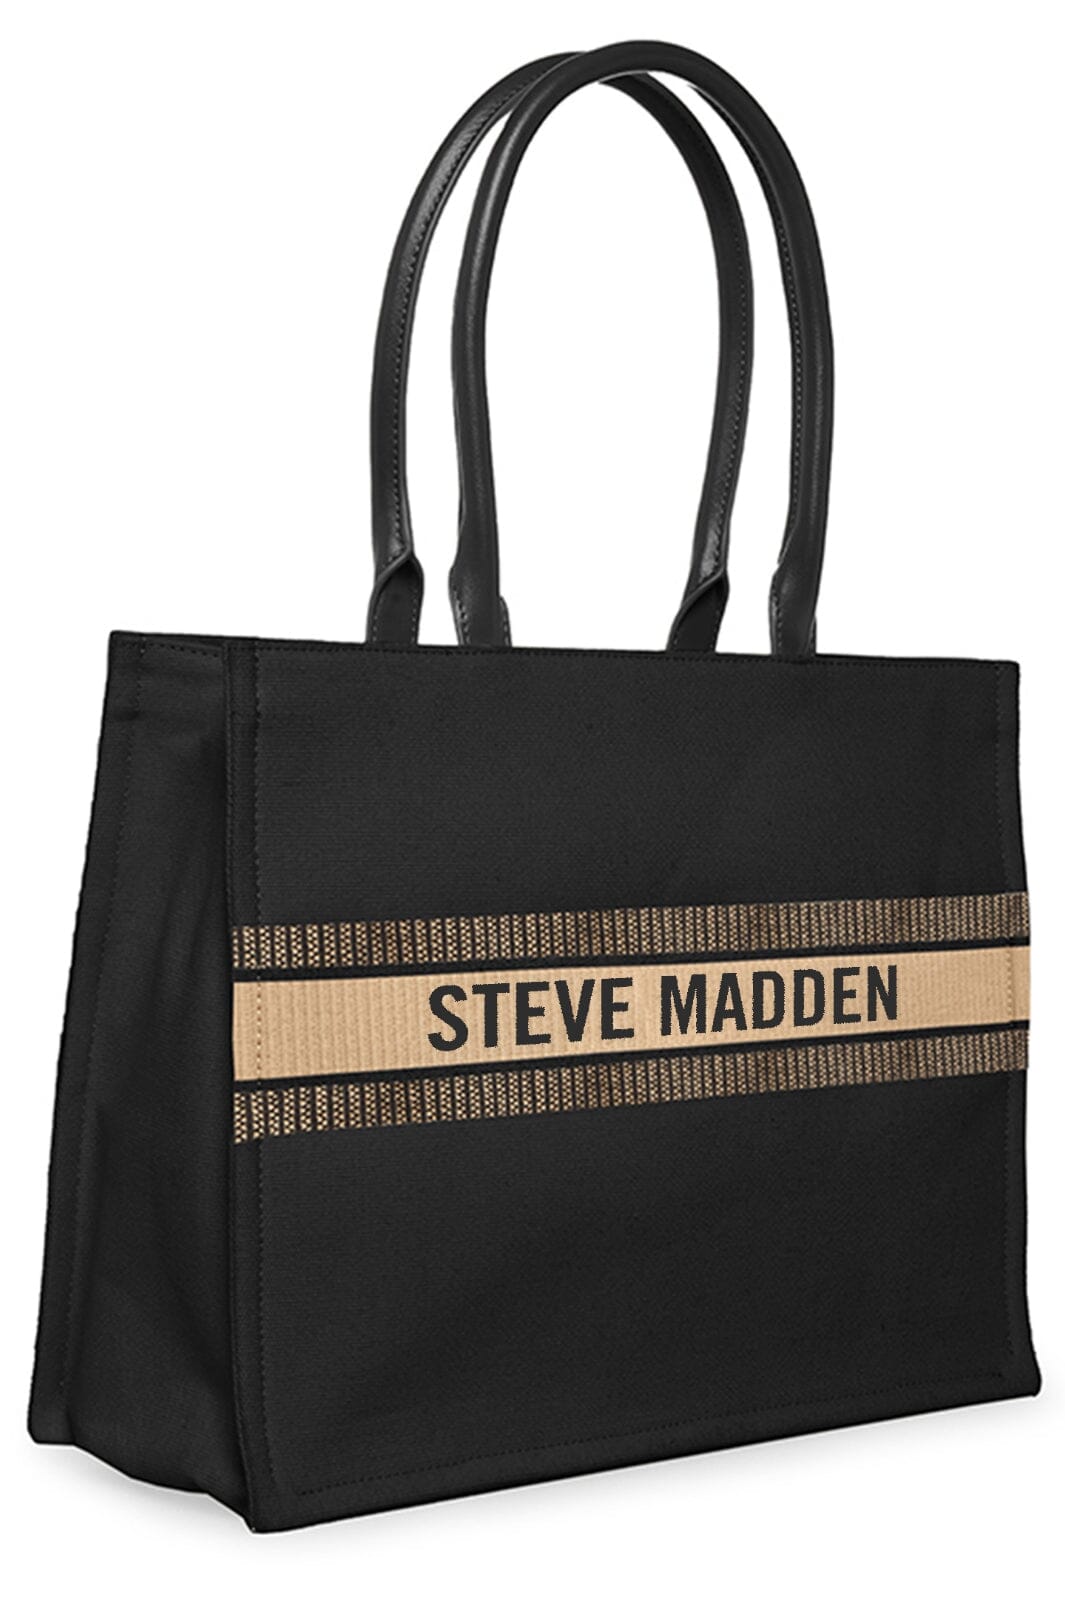 Steve Madden - Bknox-SM Tote - Black Multi Tasker 